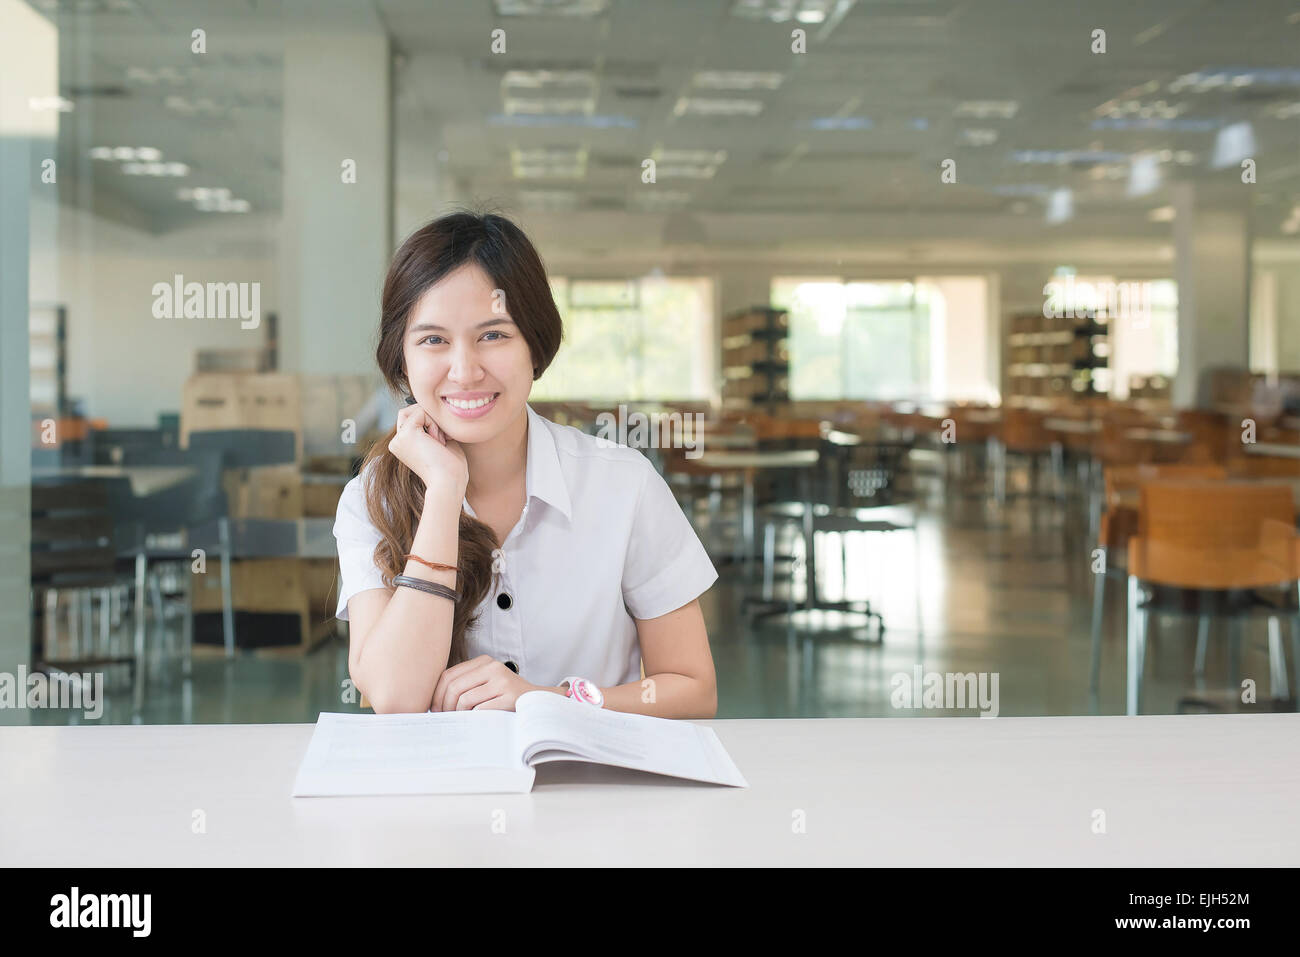 Asiatische Studentin in einheitlichen Lesebuch im Klassenzimmer Stockfoto